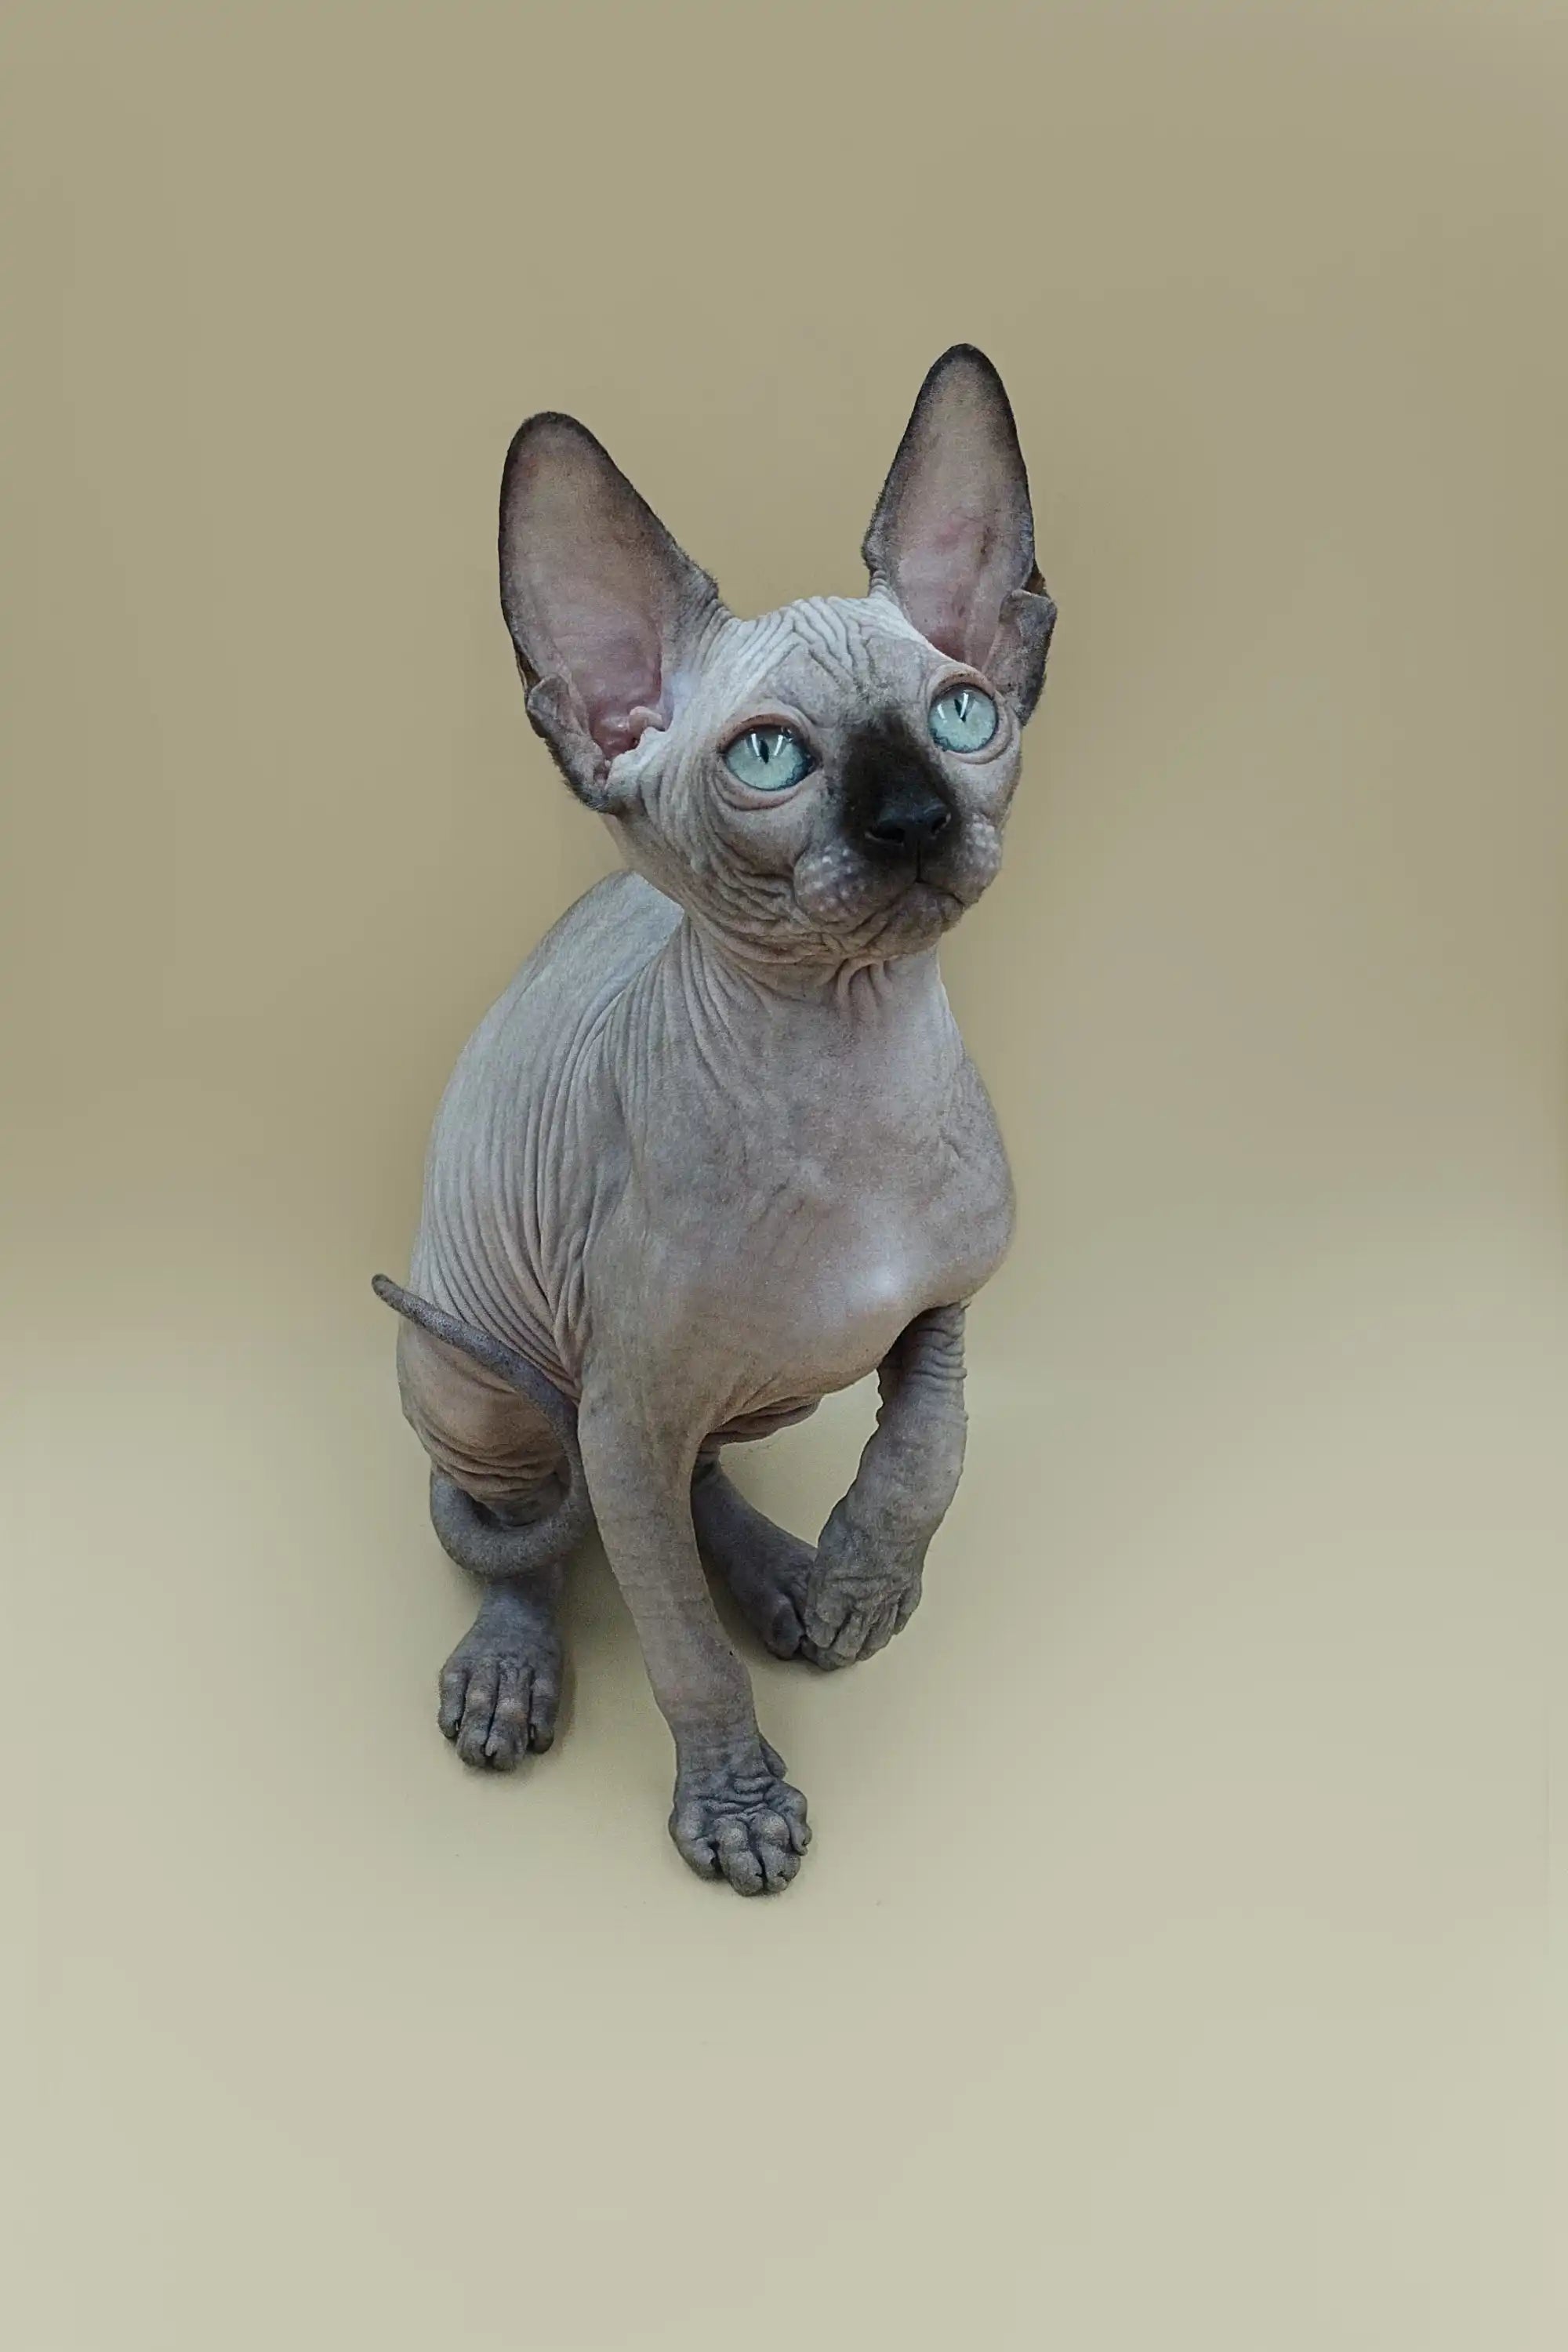 Sphynx Kittens for Sale Ilbert| Kitten